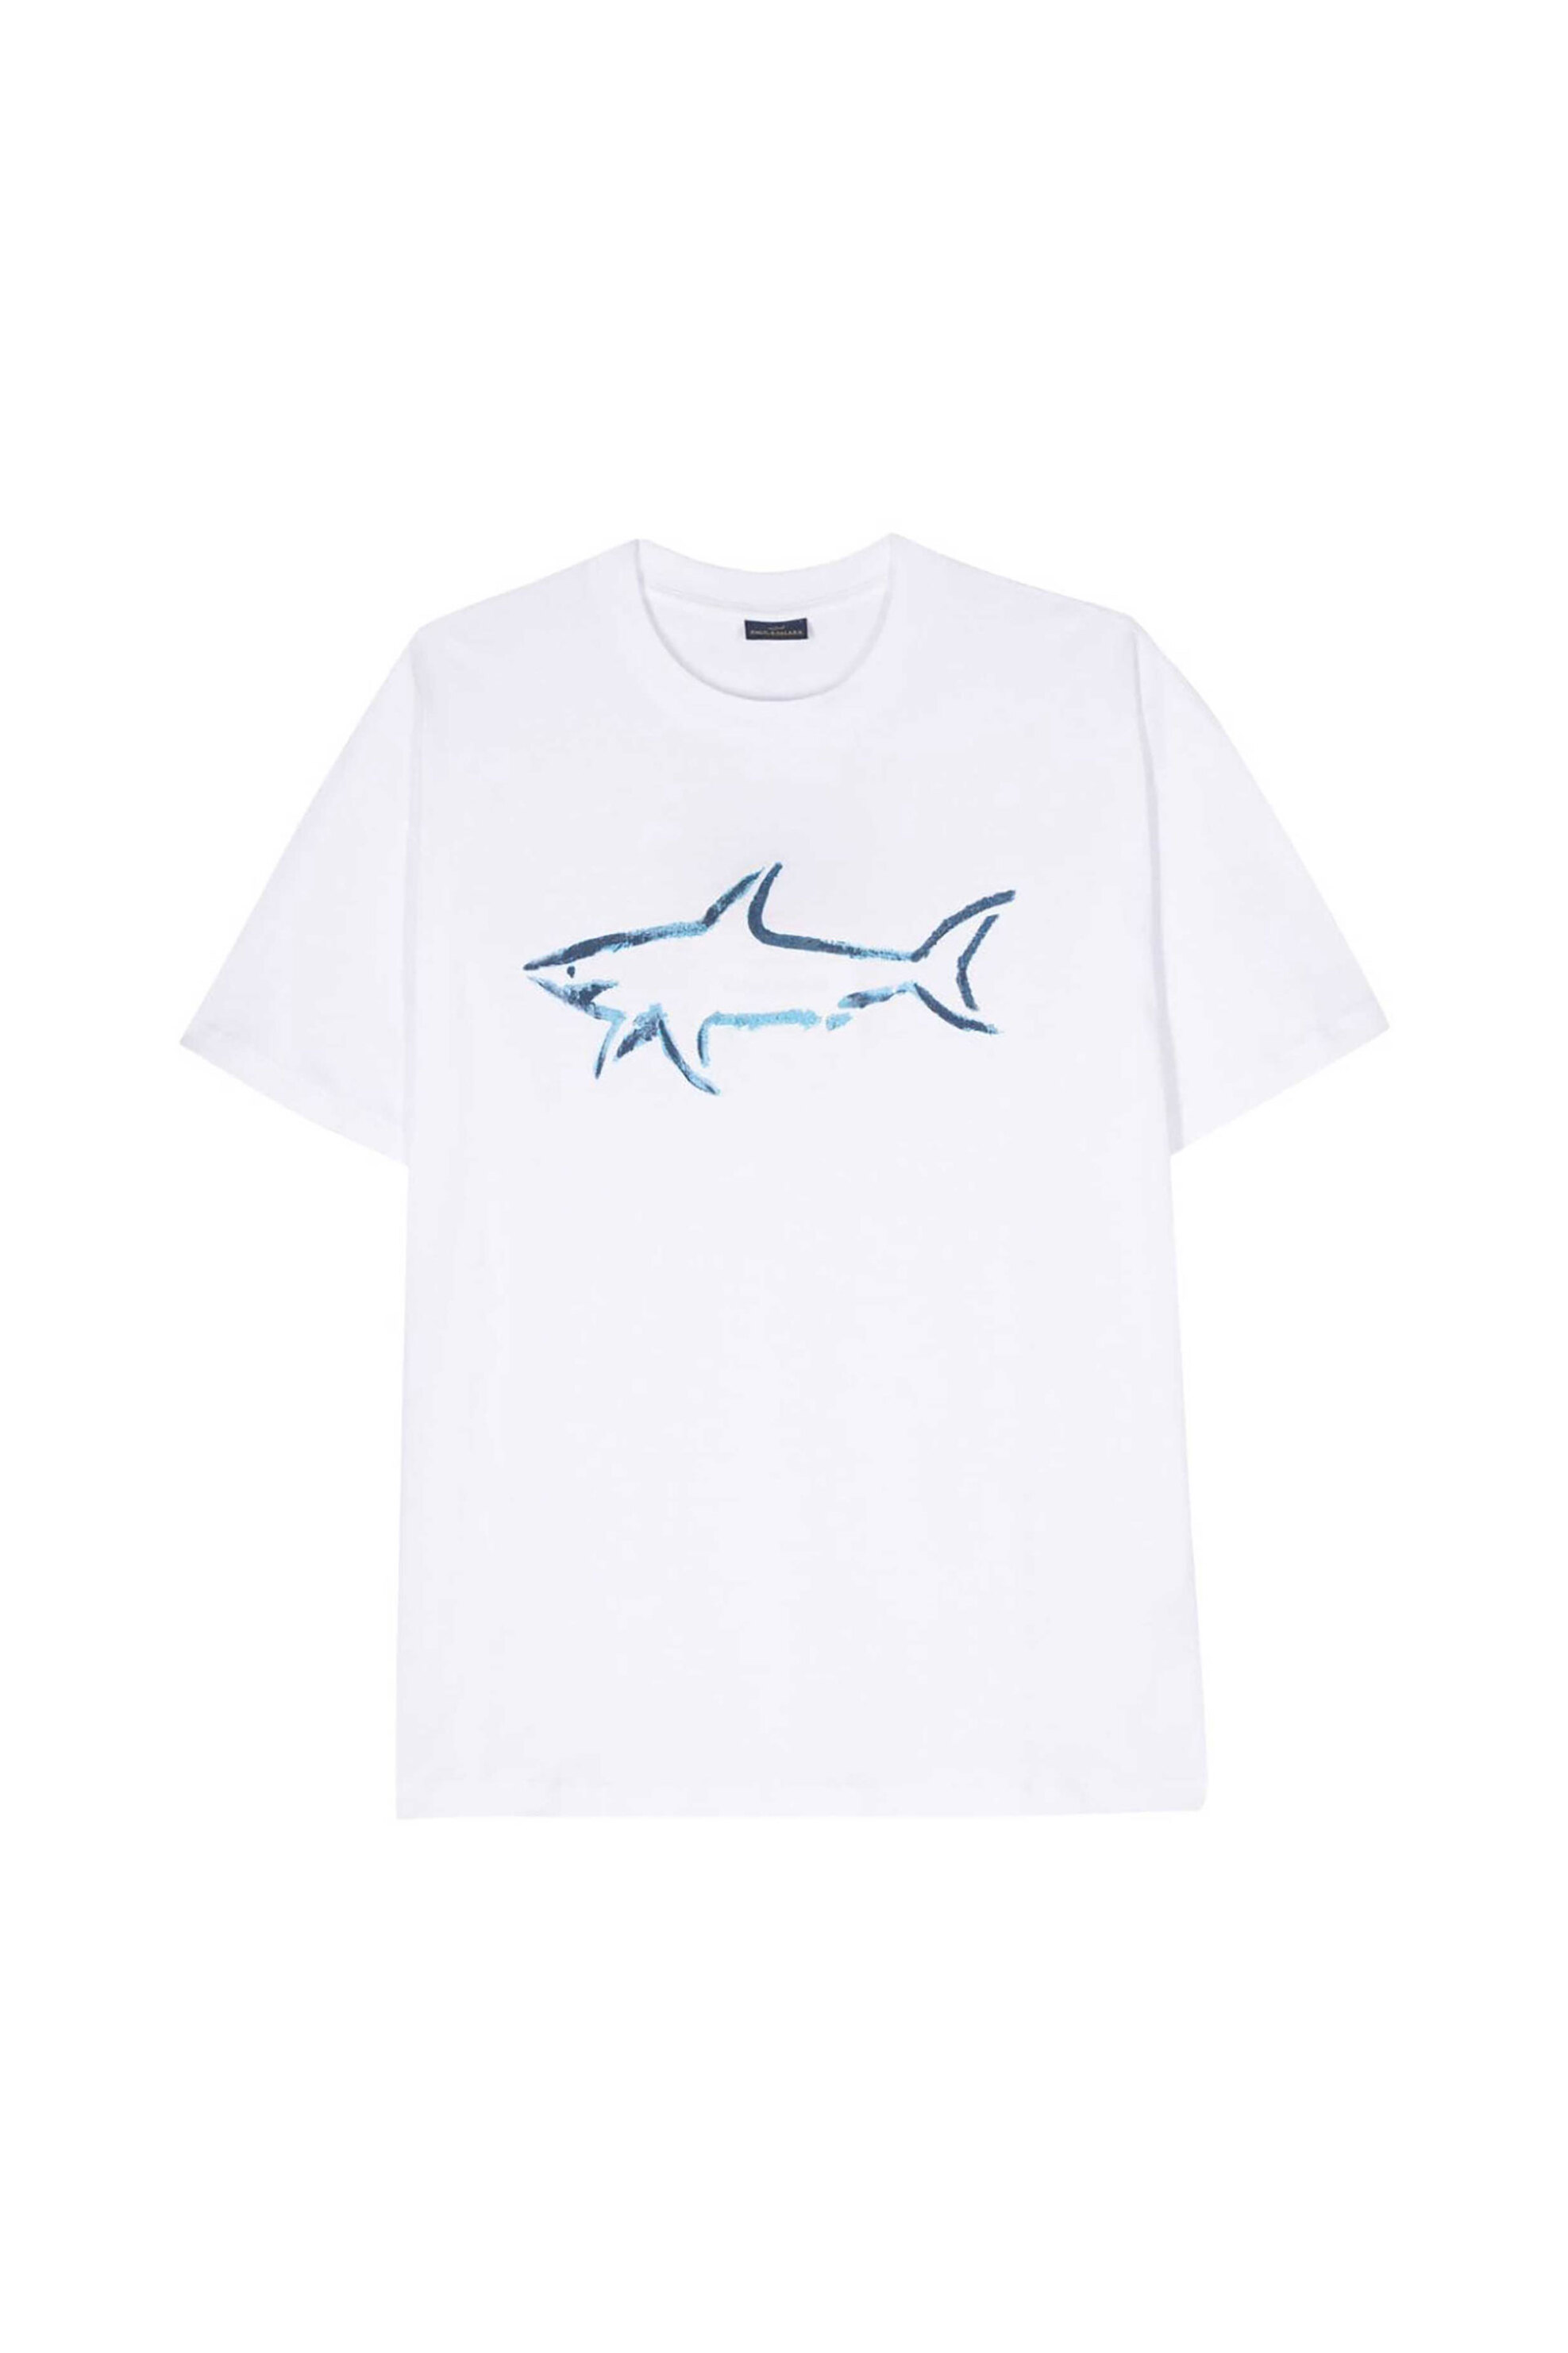 Ανδρική Μόδα > Ανδρικά Ρούχα > Ανδρικές Μπλούζες > Ανδρικά T-Shirts Paul&Shark ανδρικό T-shirt μονόχρωμο με print - 24411101 Λευκό